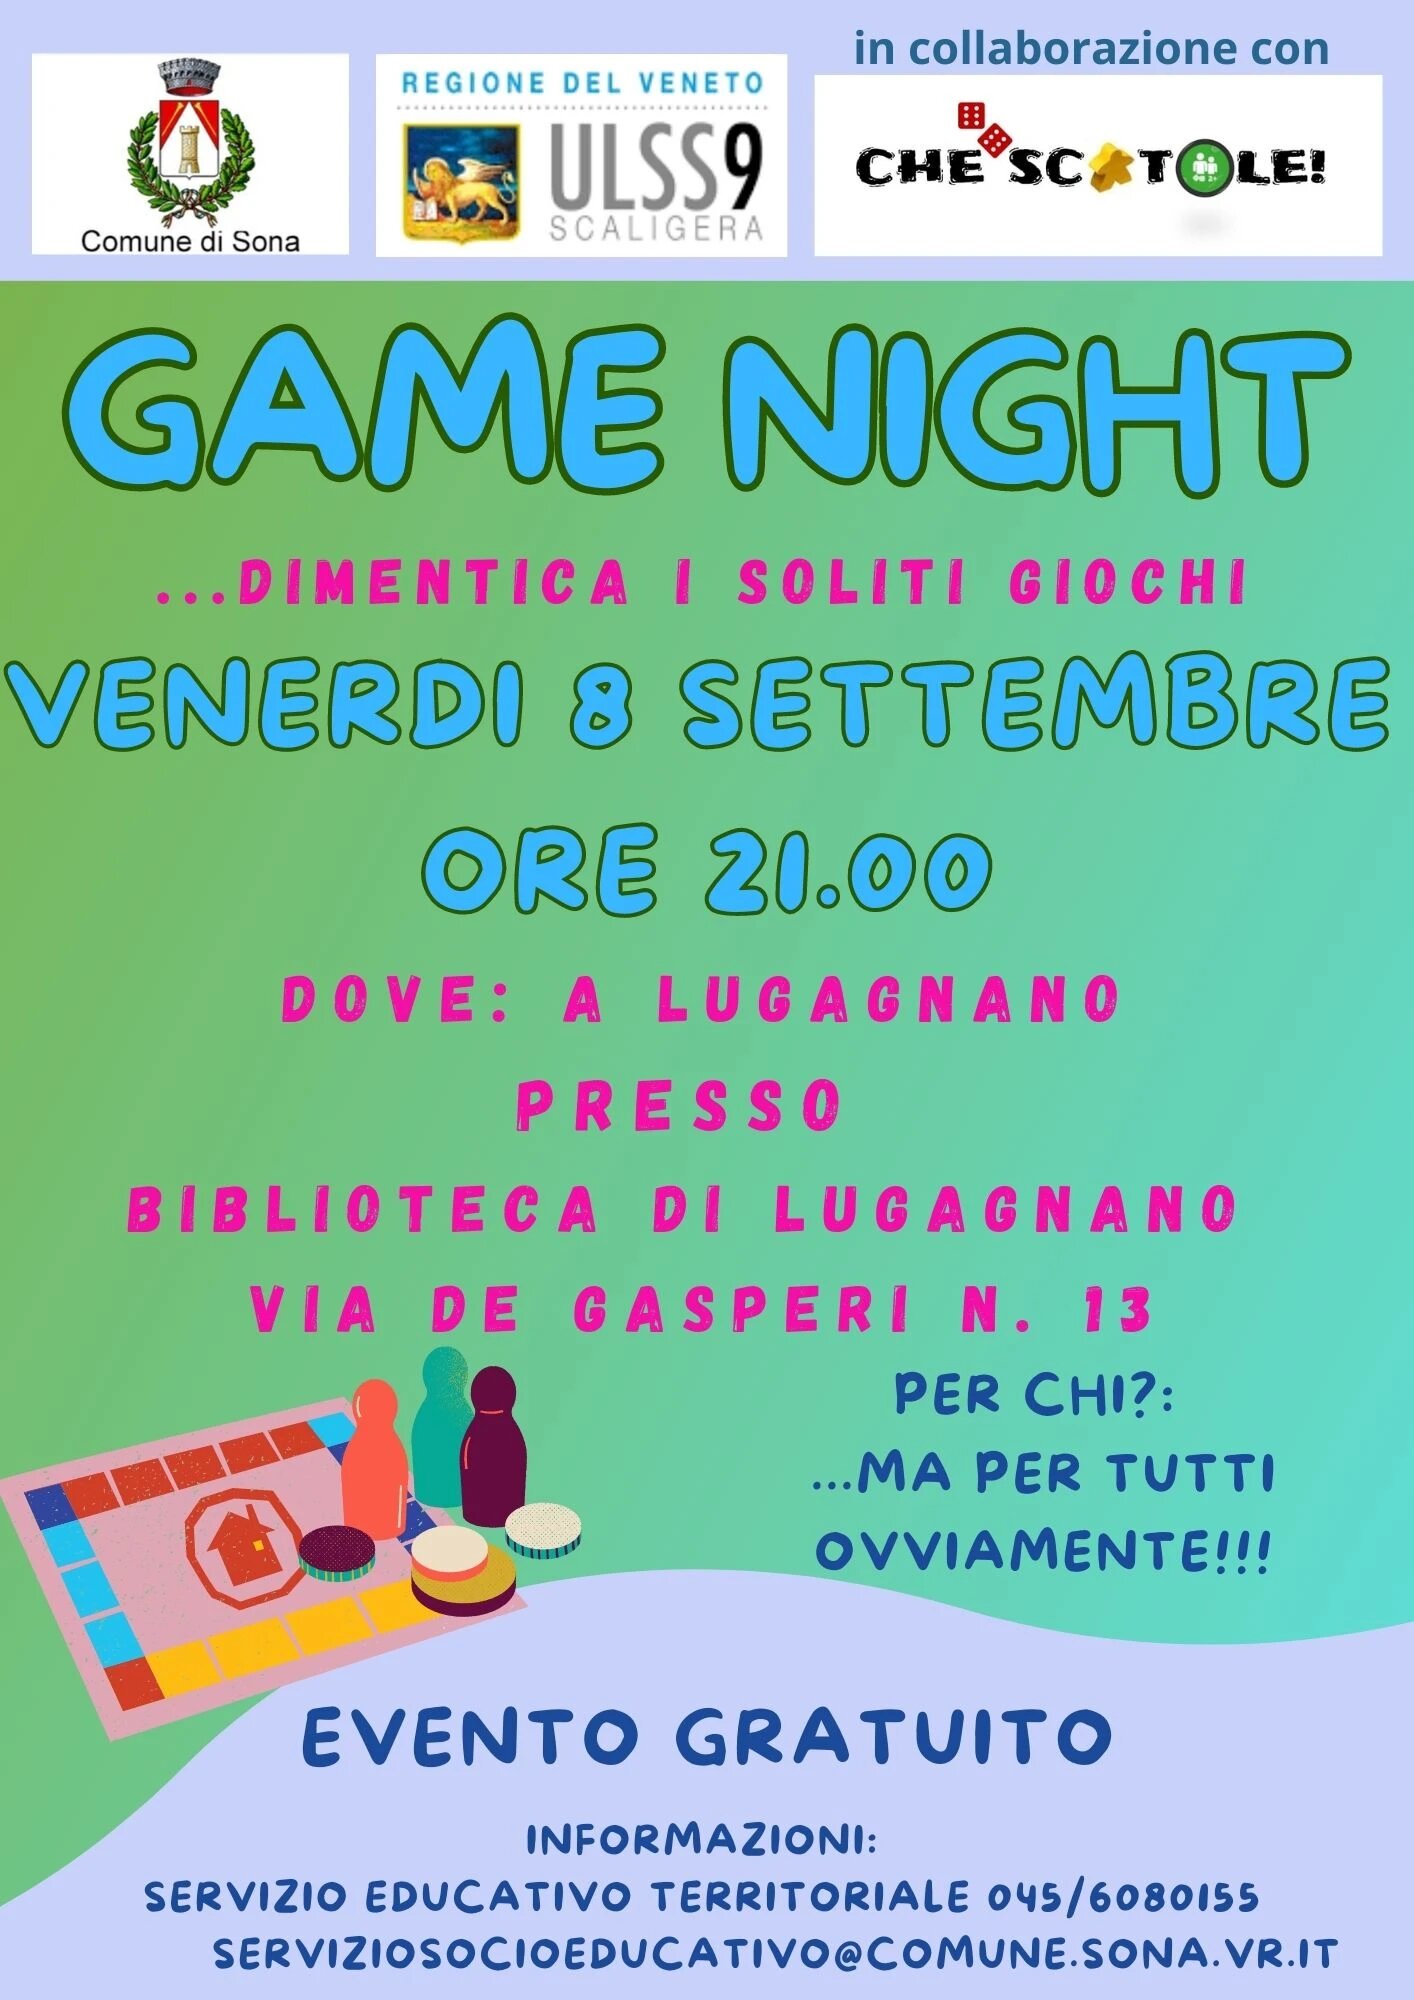 L'Adige di Verona“Game Night”: a Lugagnano giochi in scatola per tute le età